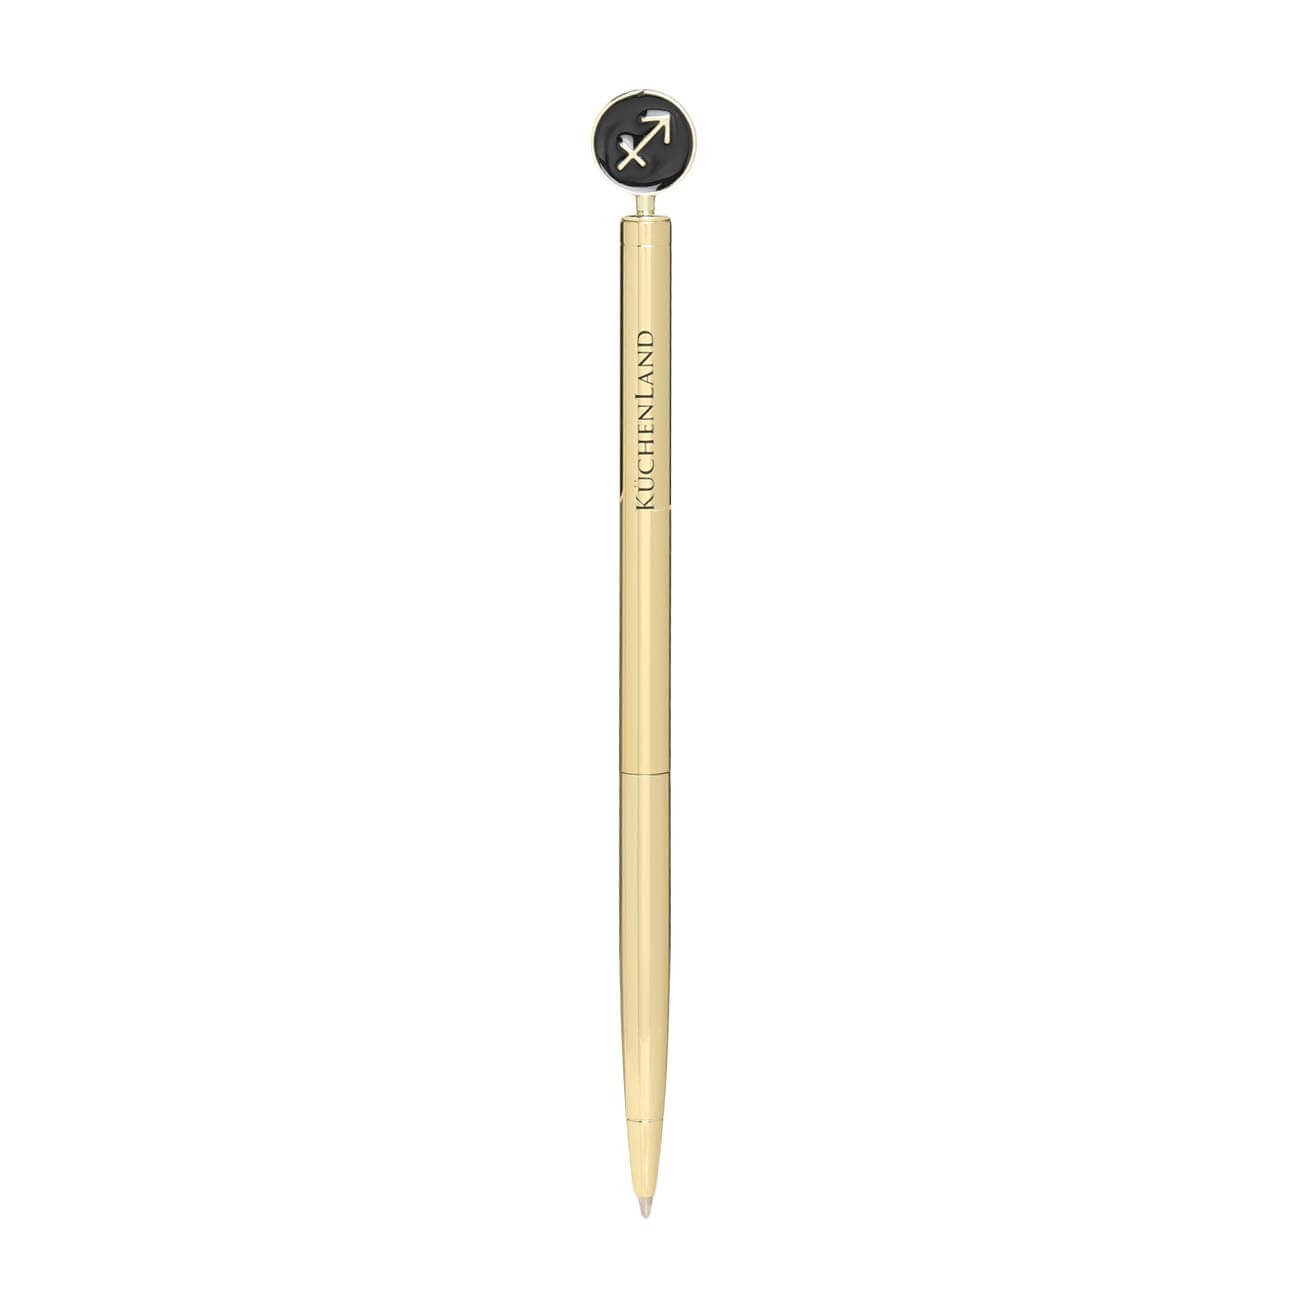 Ручка шариковая, 15 см, с фигуркой, сталь, золотисто-черная, Стрелец, Zodiac